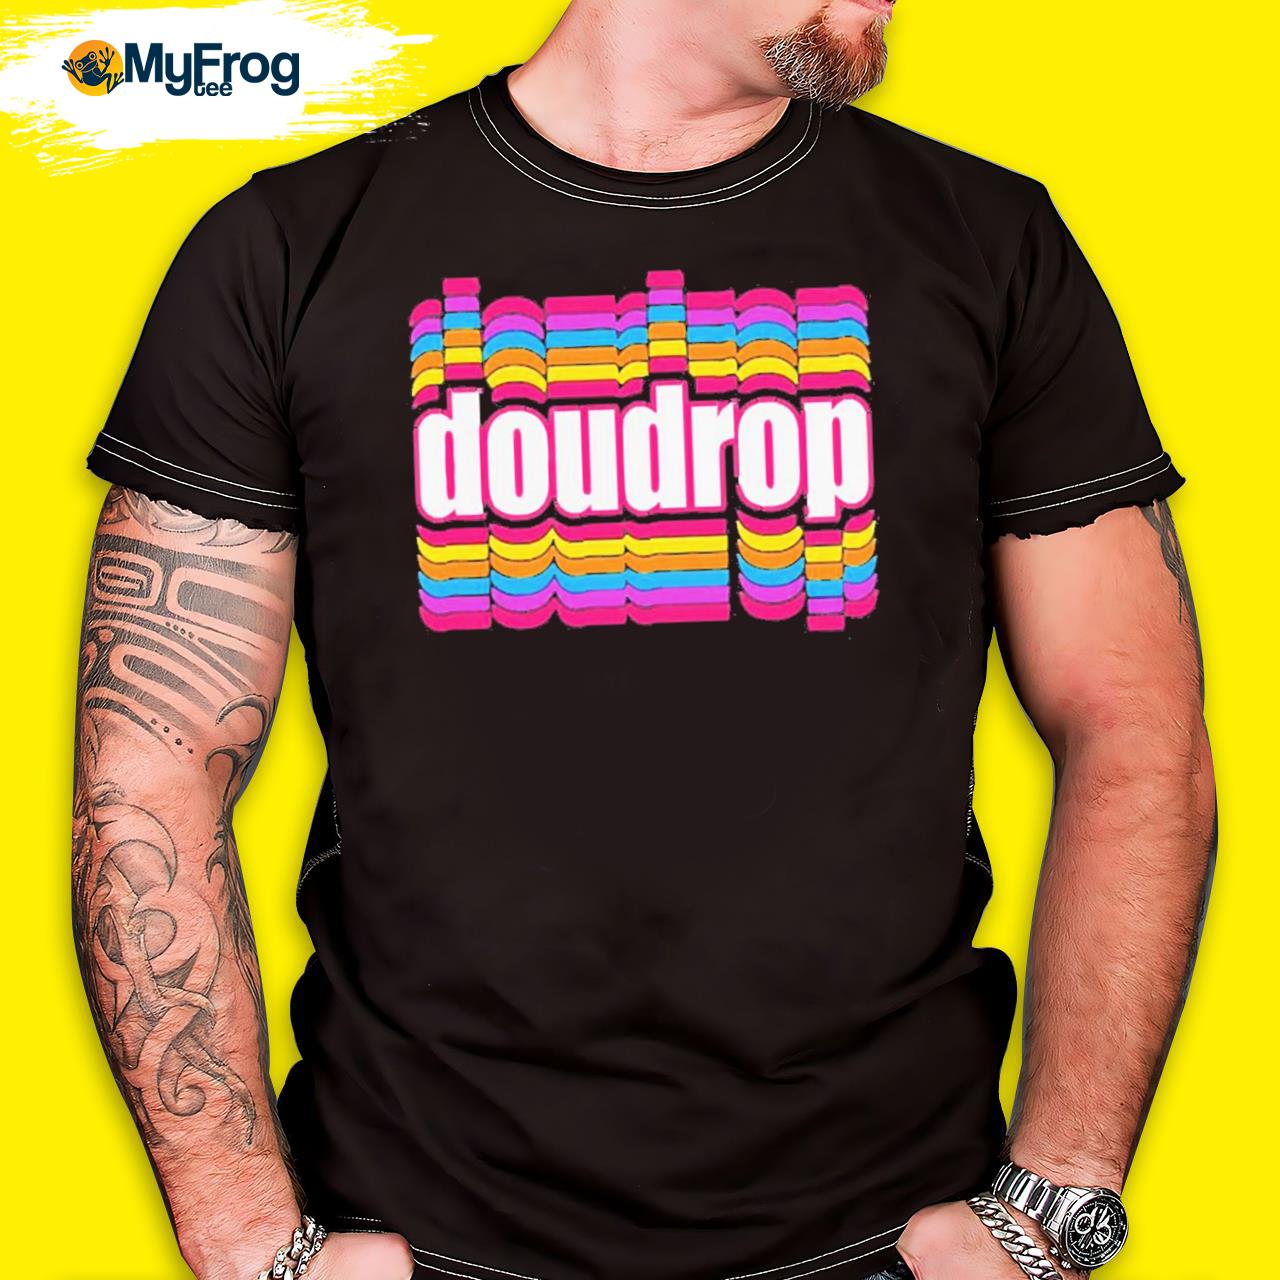 Doudrop Color Logo Shirt